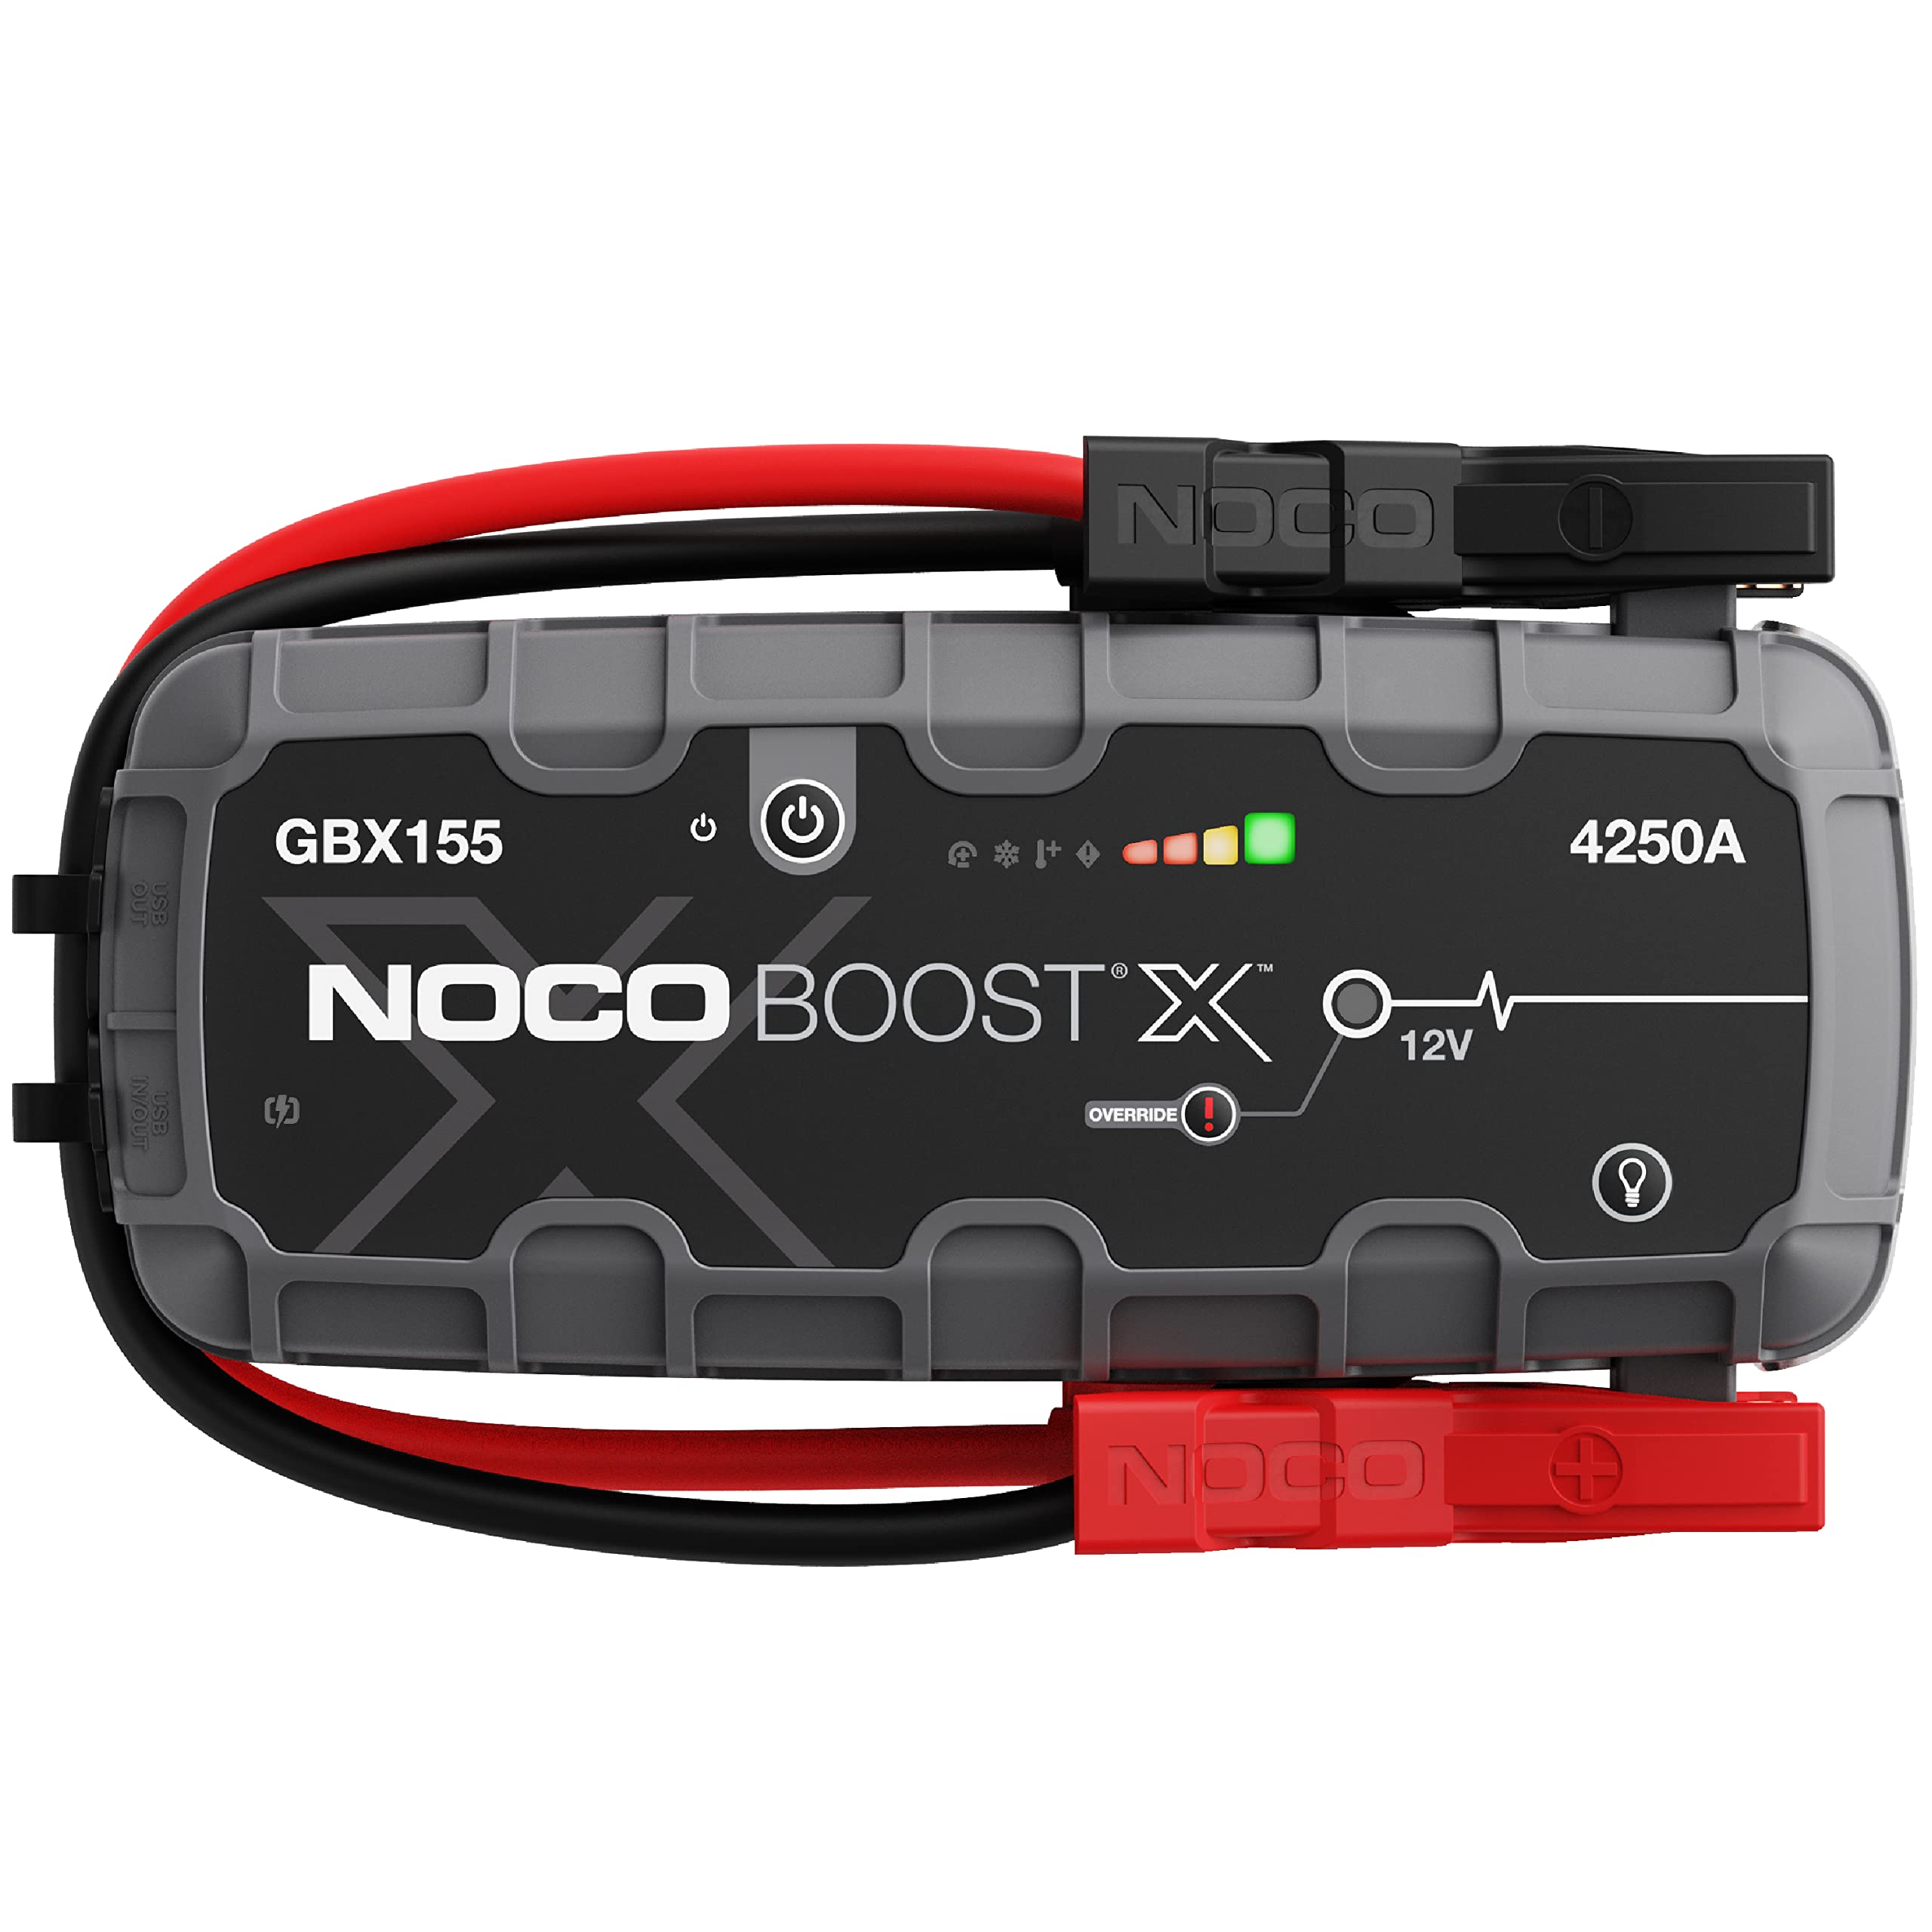 NOCO Boost X GBX155 4250A 12V UltraSafe Starthilfe Powerbank, Auto Batterie Booster, Tragbare USB Ladegerät, Starthilfekabel und Überbrückungskabel für bis zu 10,0-L Benzin und 8,0-L Dieselmotoren